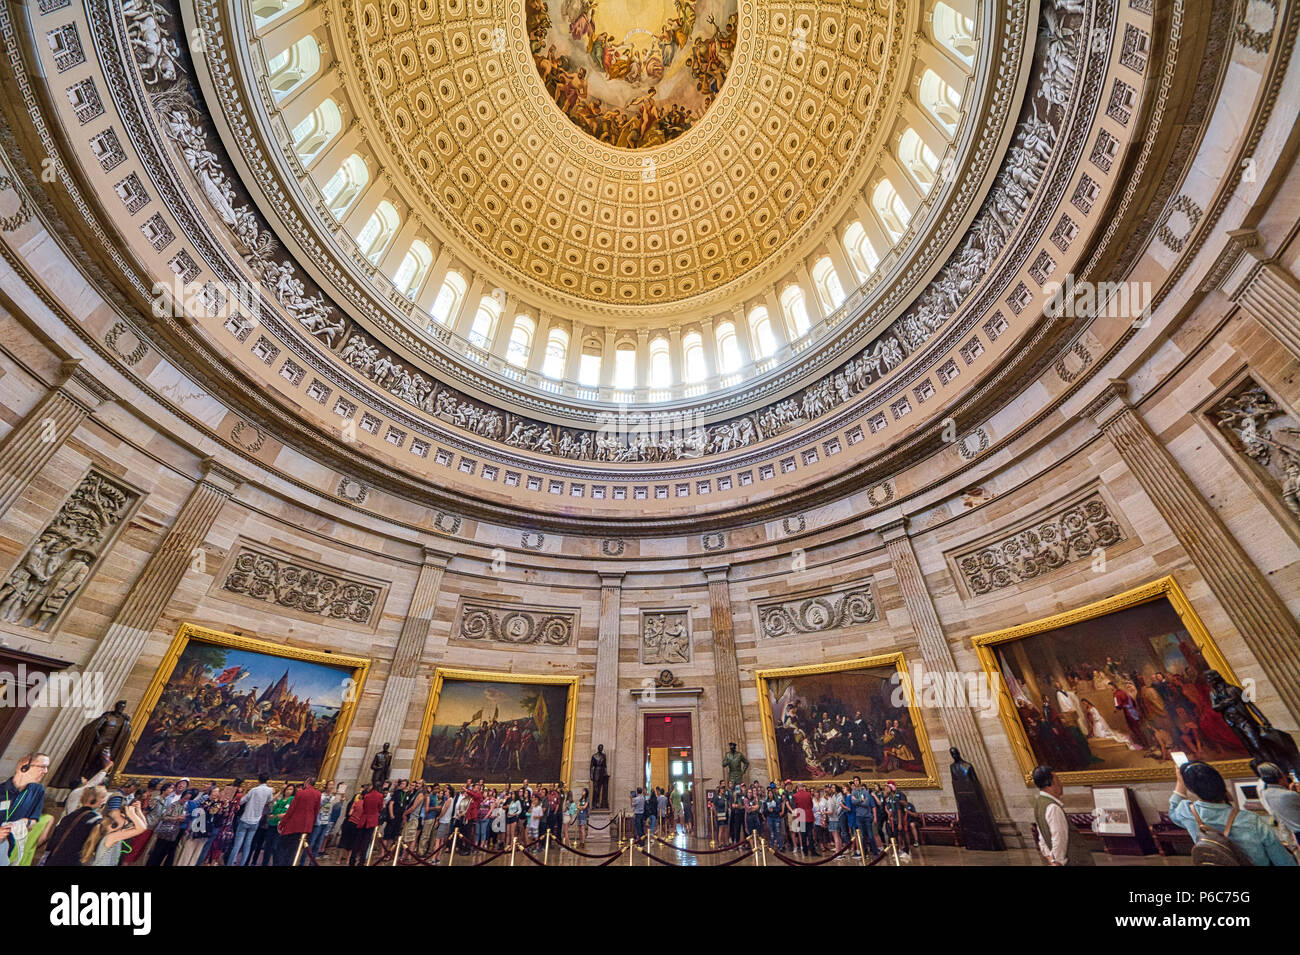 Dem US Capitol Rotunde ist eine große, gewölbte, runden Raum in der Mitte des United States Capitol, Washington, District of Columbia, USA Stockfoto